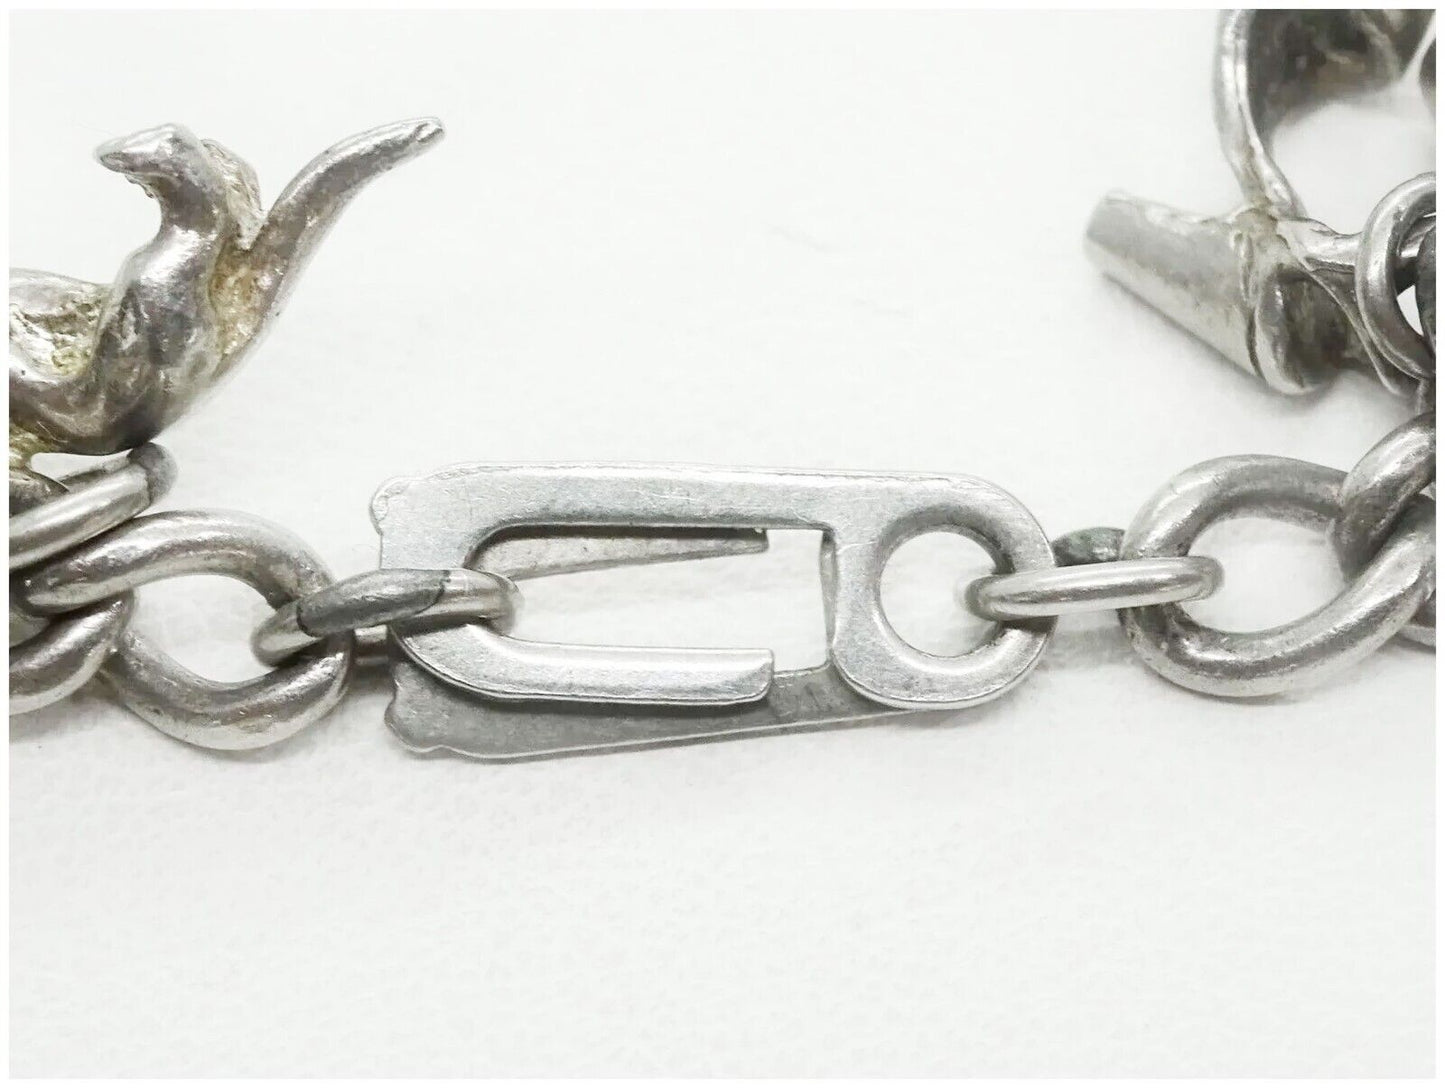 Estate Vintage Sterling Silver Charm Bracelet 12 Unique Charms 35 Grams